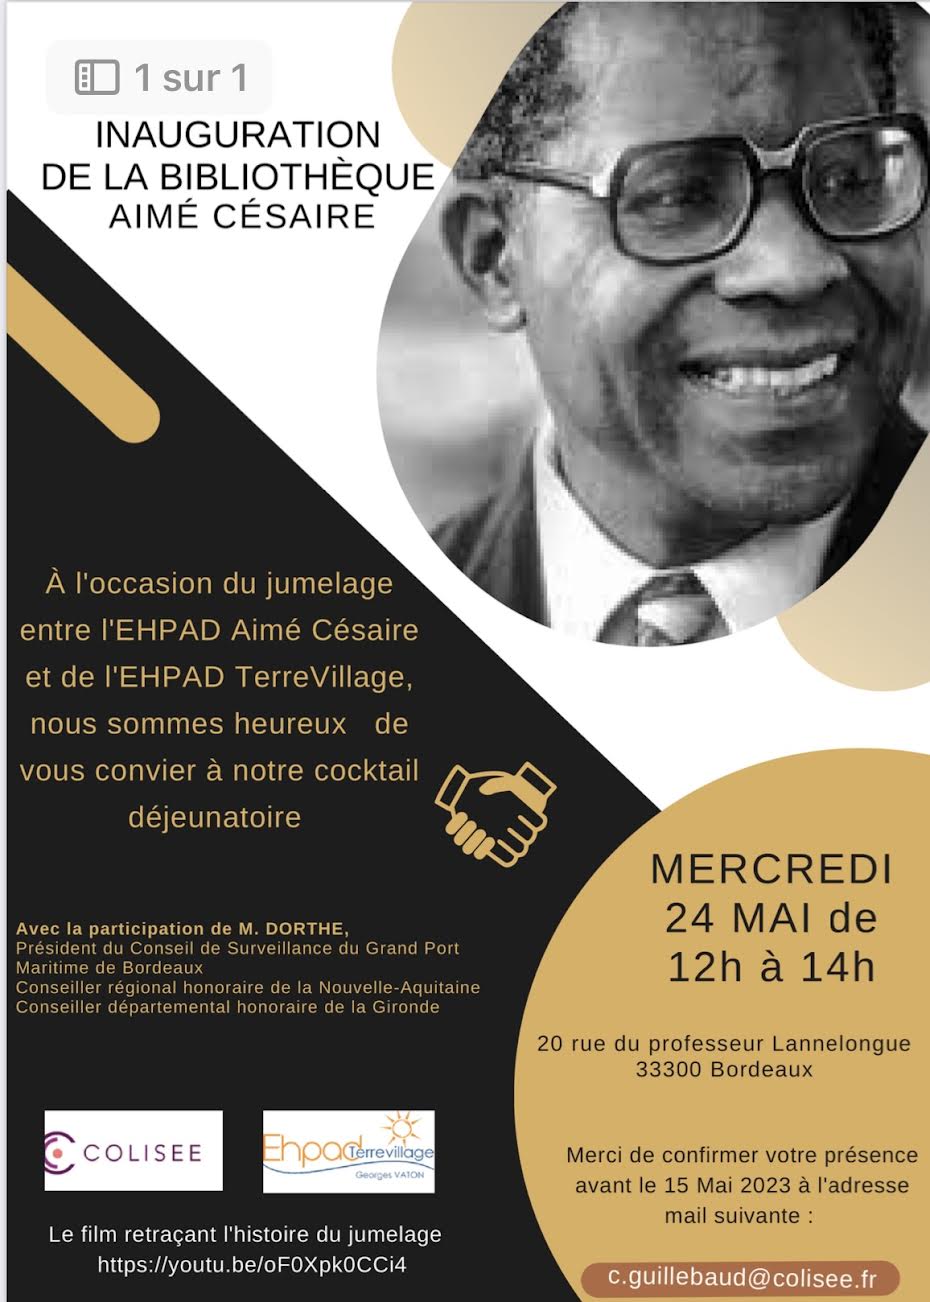 image : inauguration de la bibliothèque Aimé Césaire : jumelage Ehpad